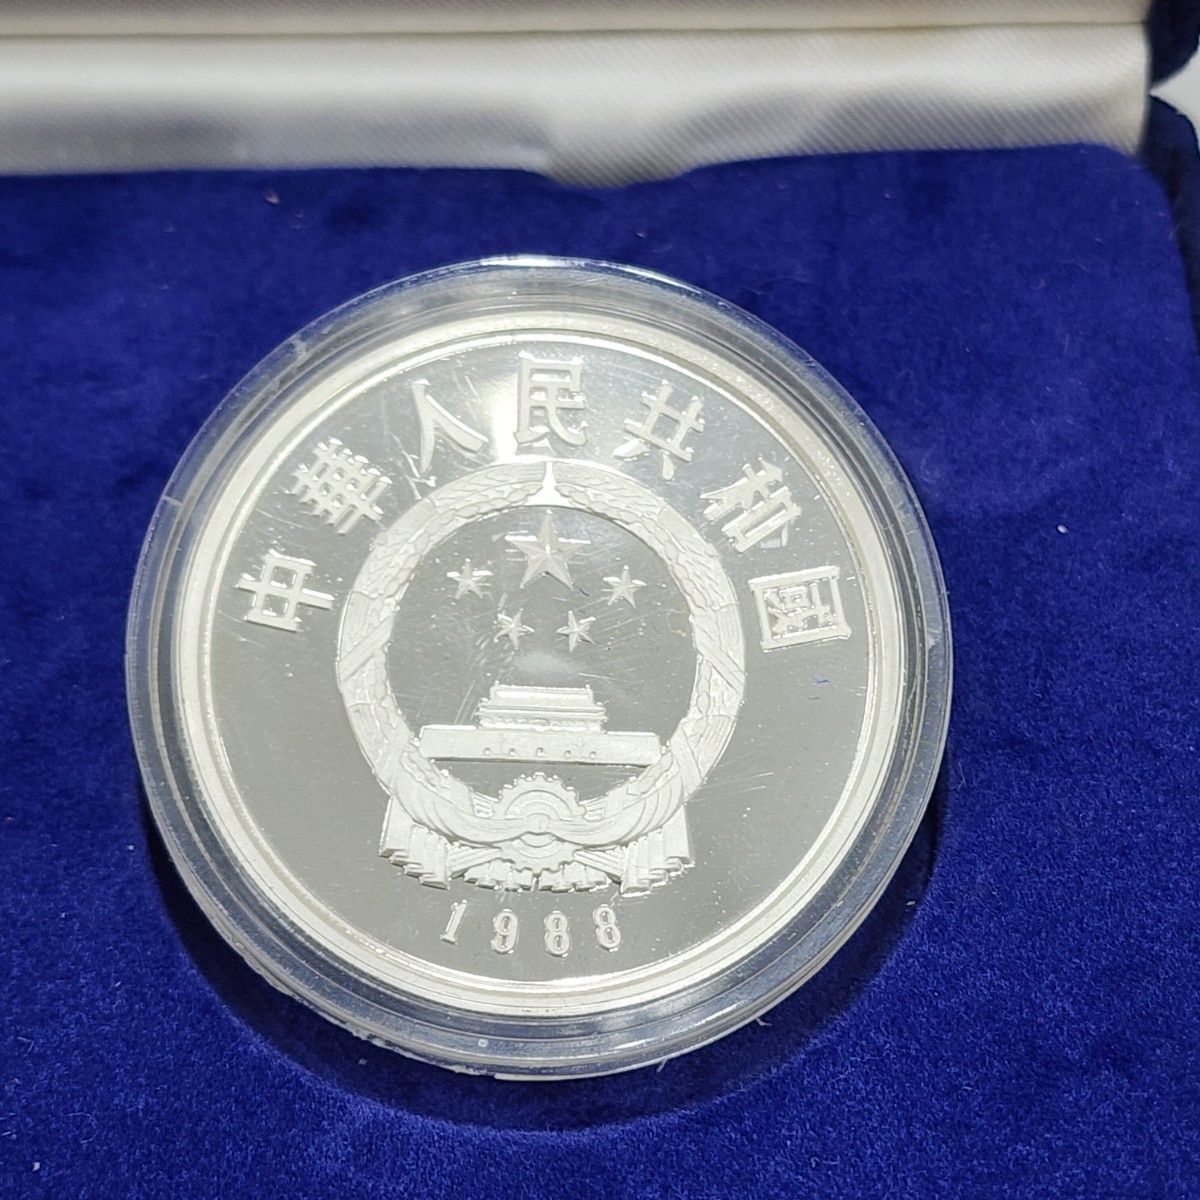 中国人民銀行 中国 10元 プルーフ 銀貨 1988年 2種 朱鷺 白海豚 珍稀